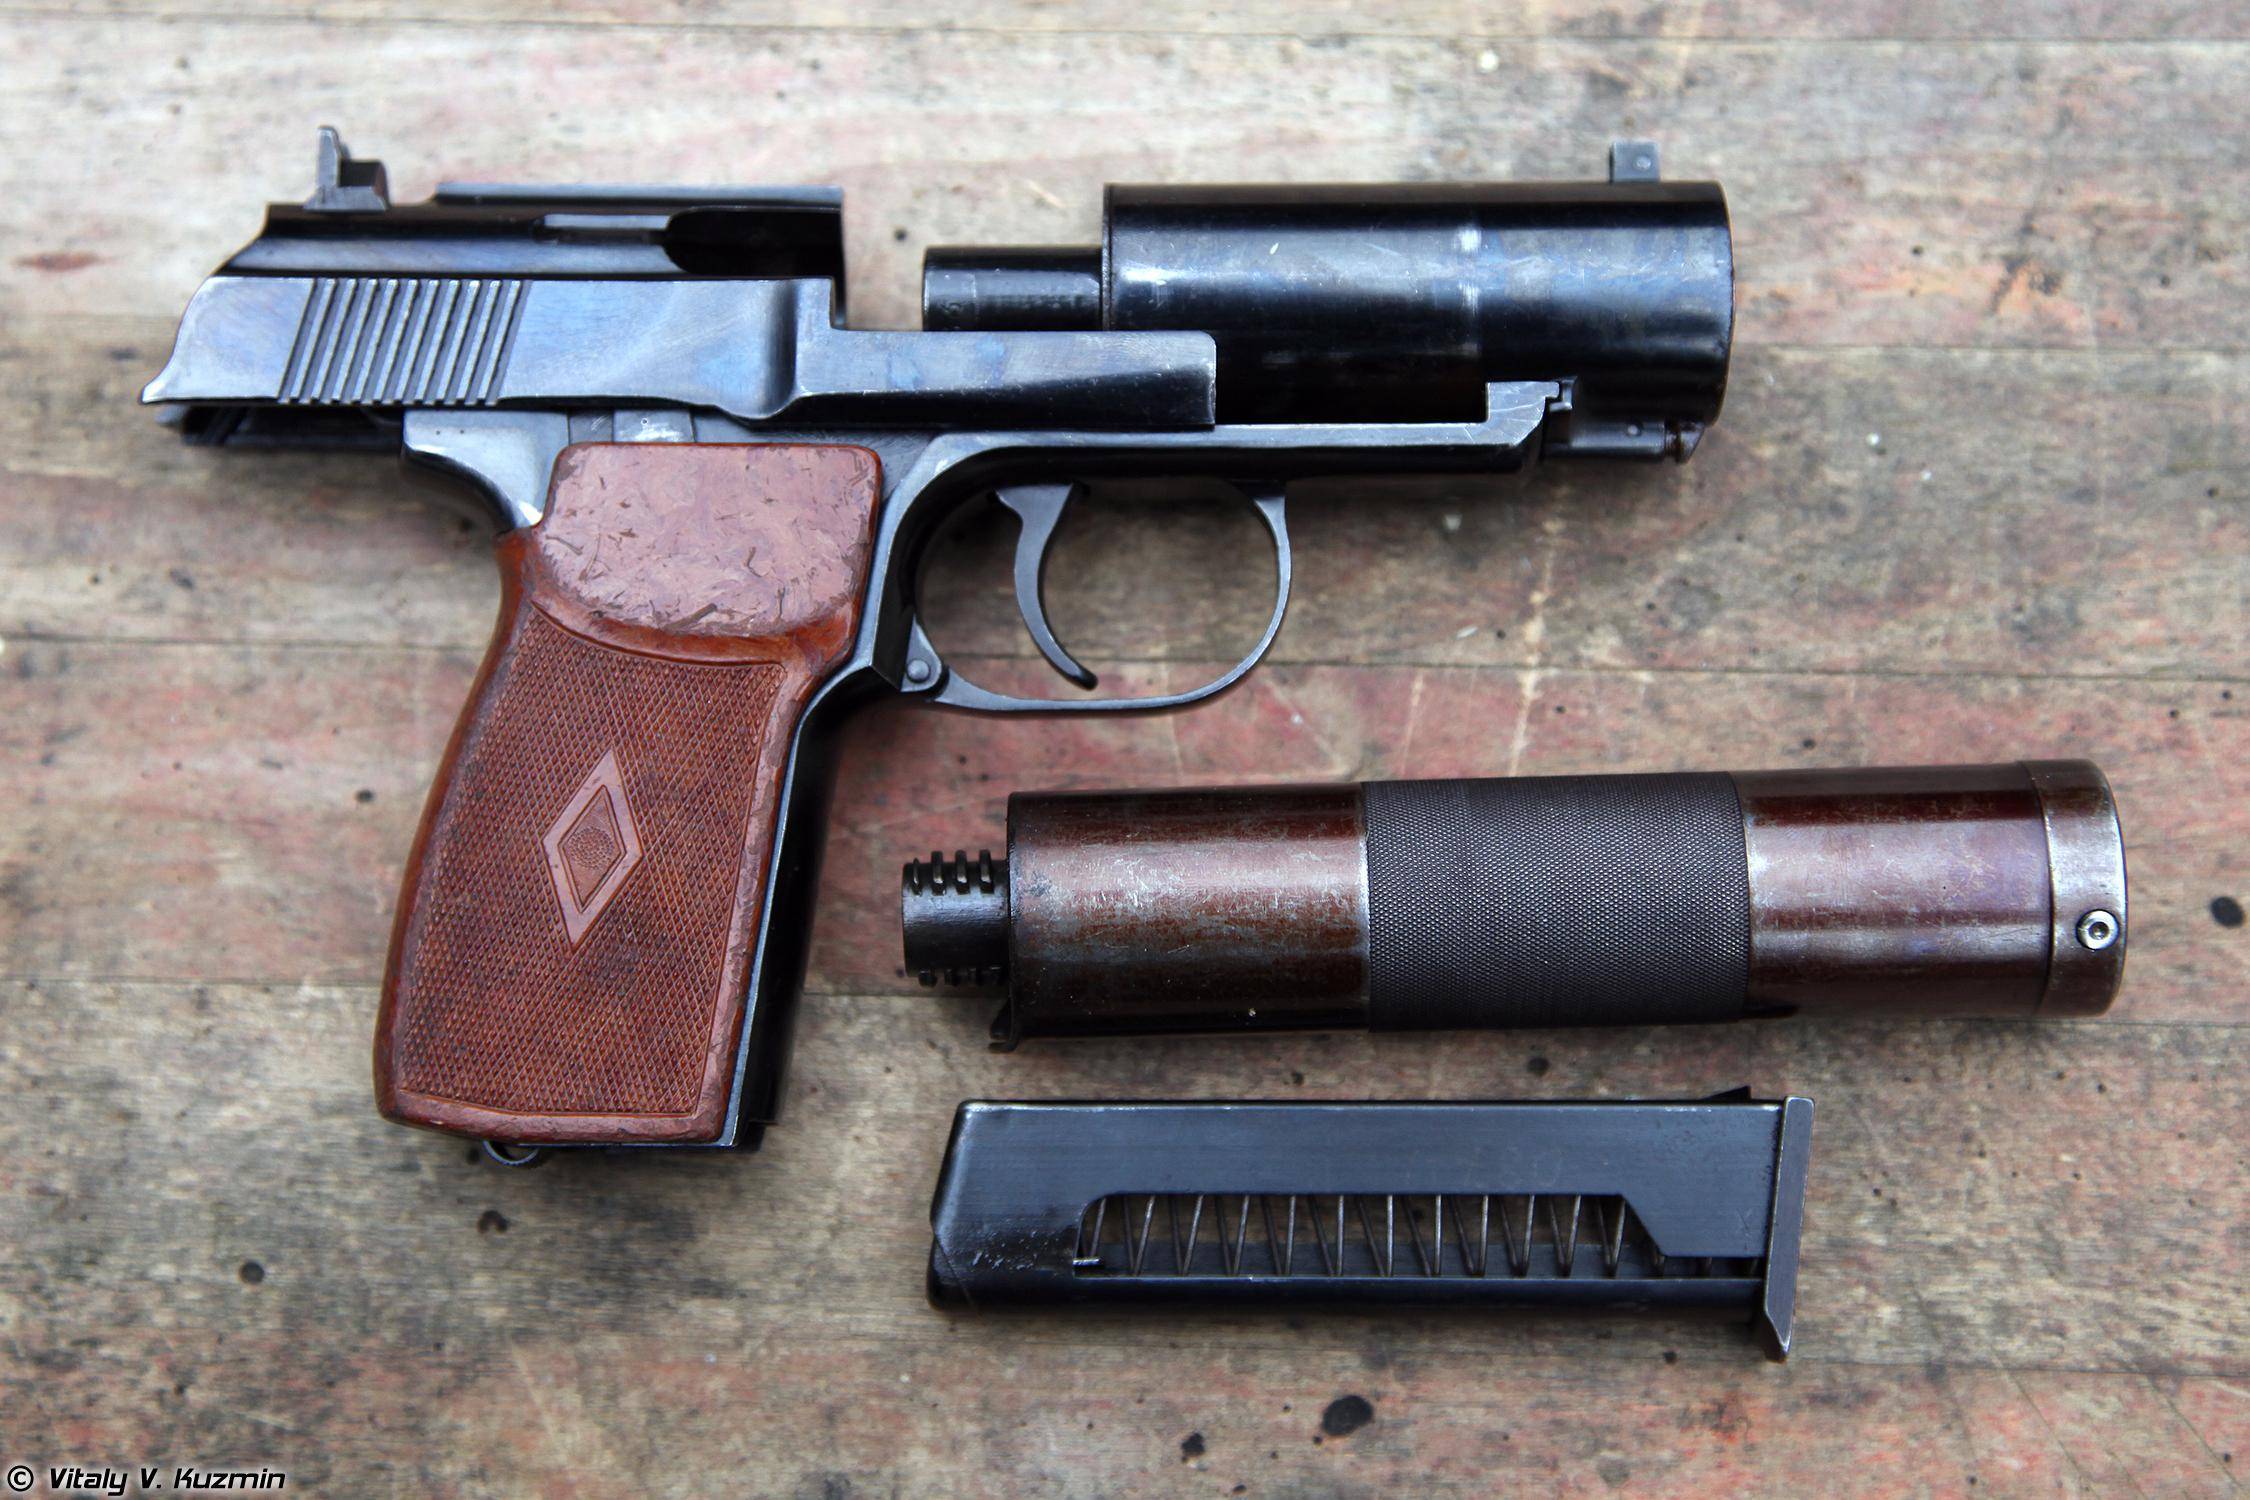 Пистолет nambu type 94